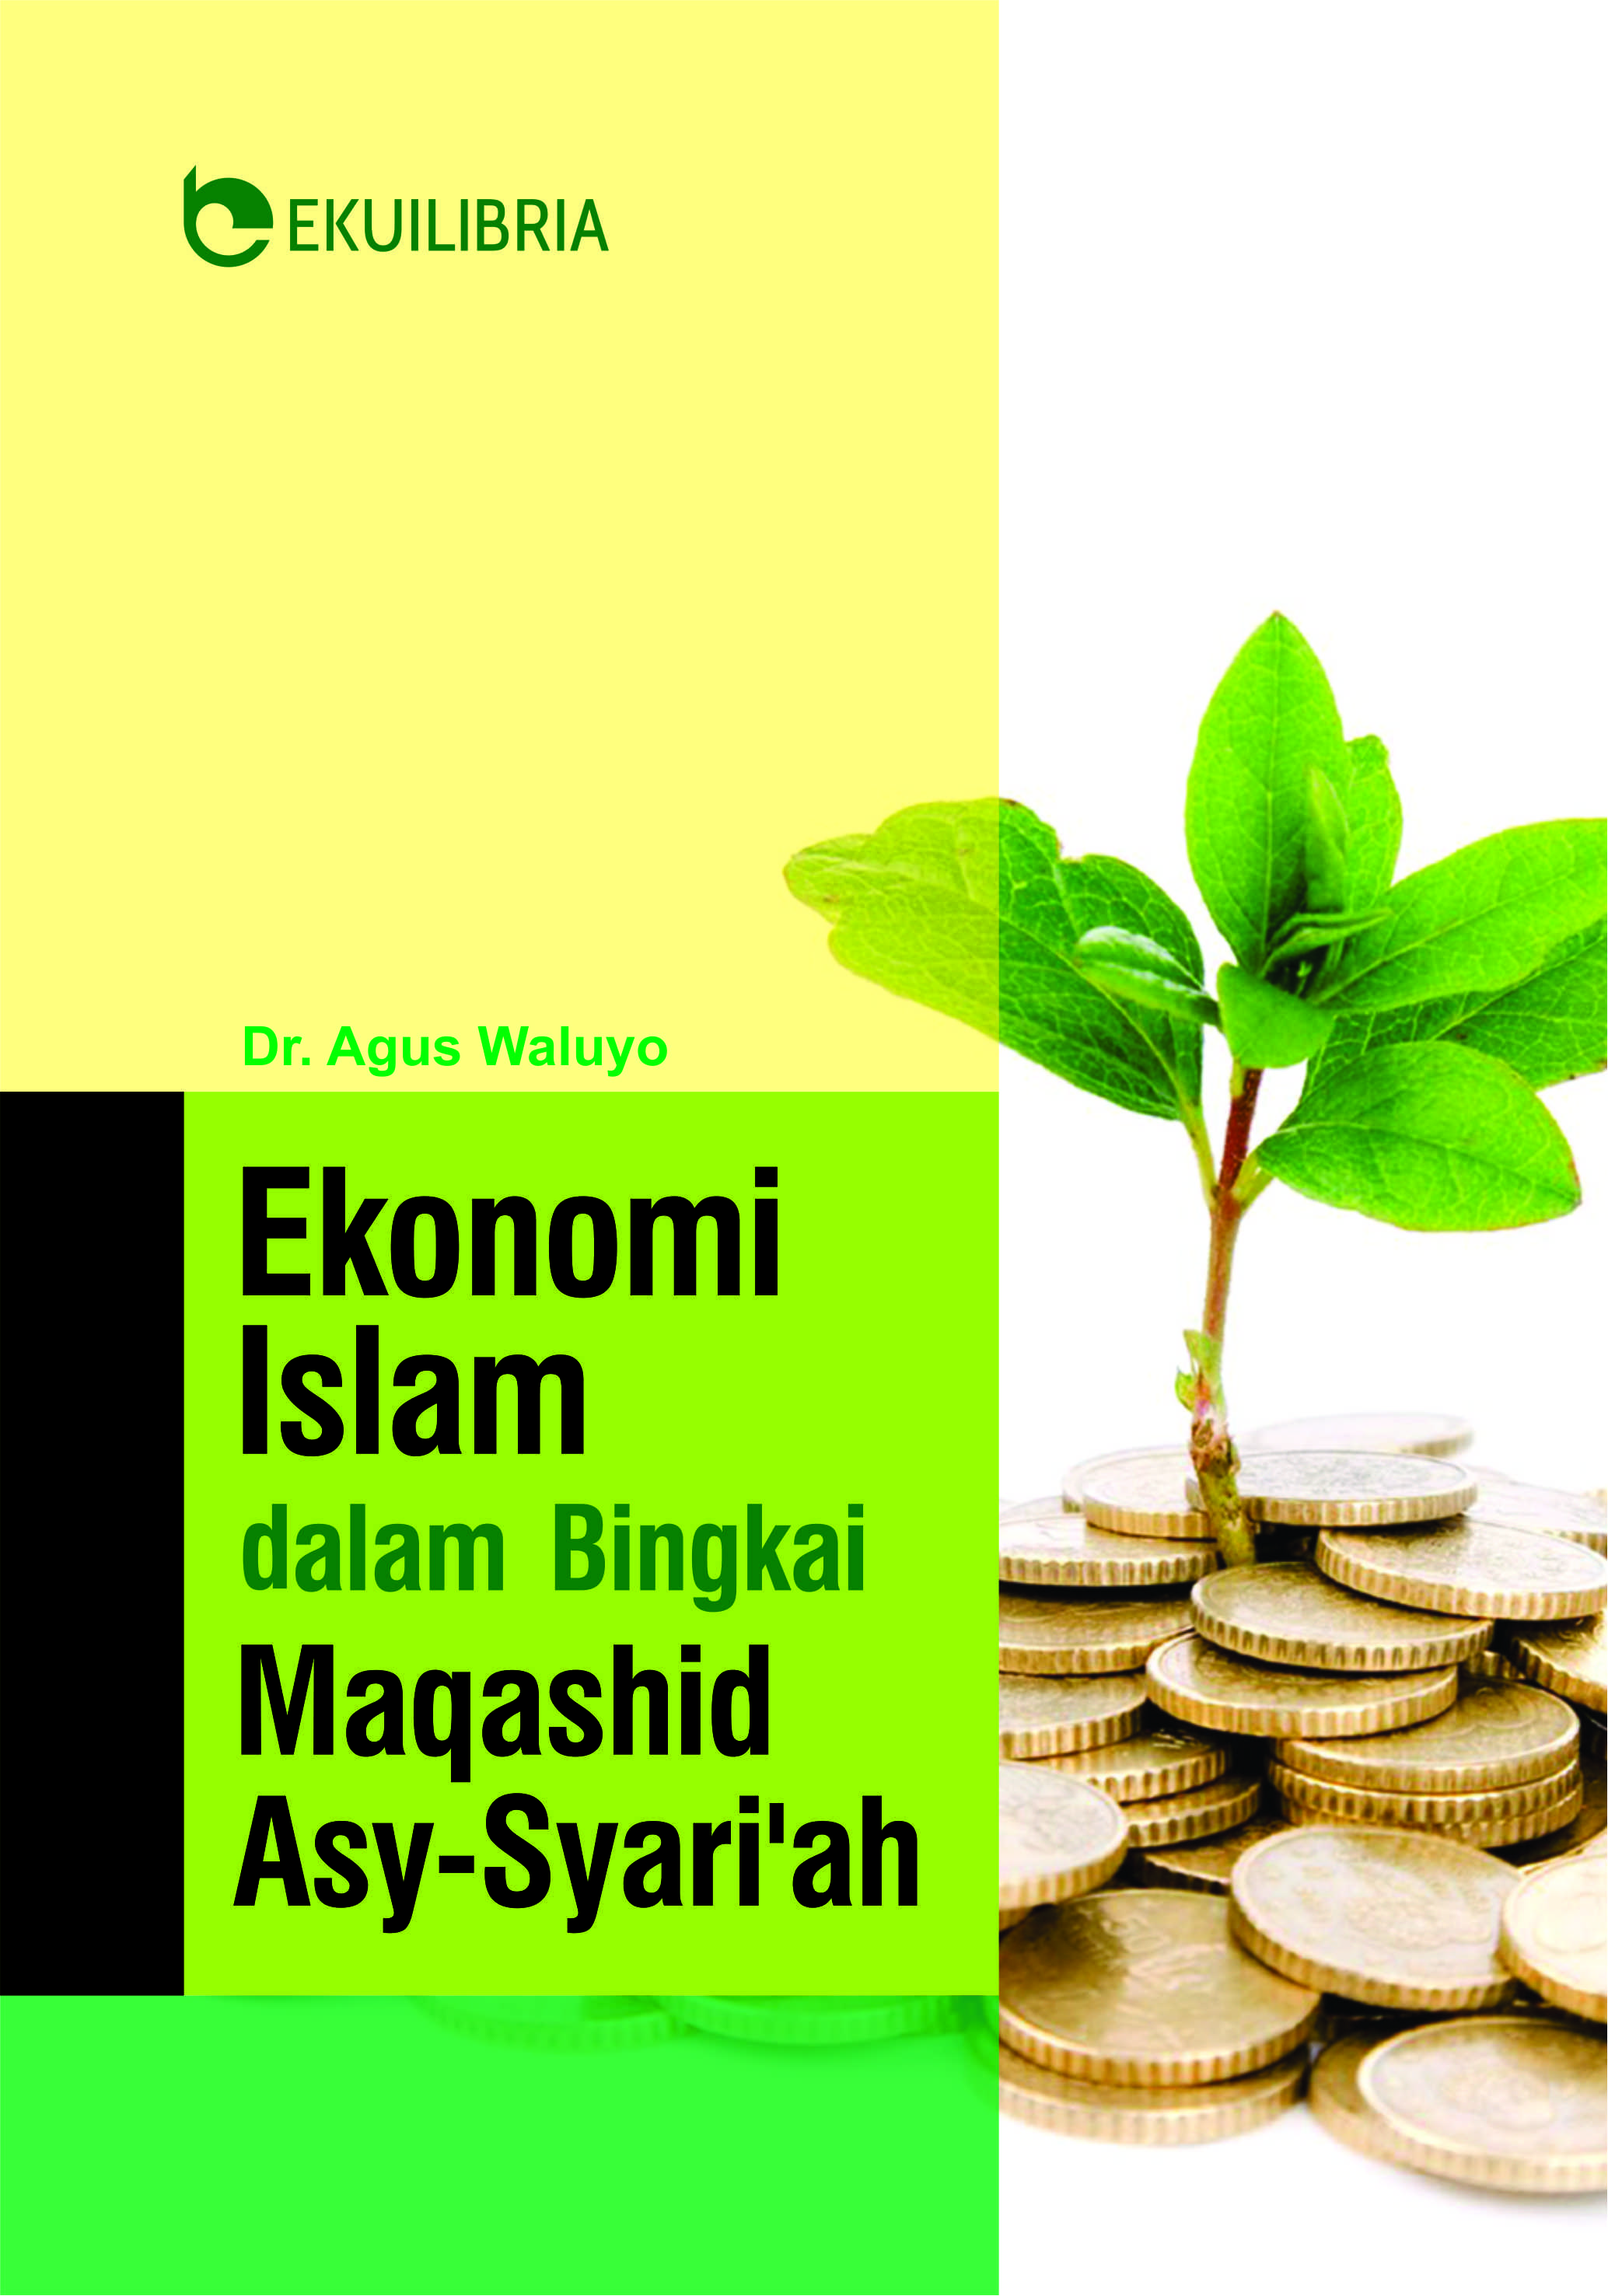 Ekonomi Islam dalam bingkai maqashid asy-syari'ah : refleksi pemikiran M. Umer Chapra [sumber elektronis]